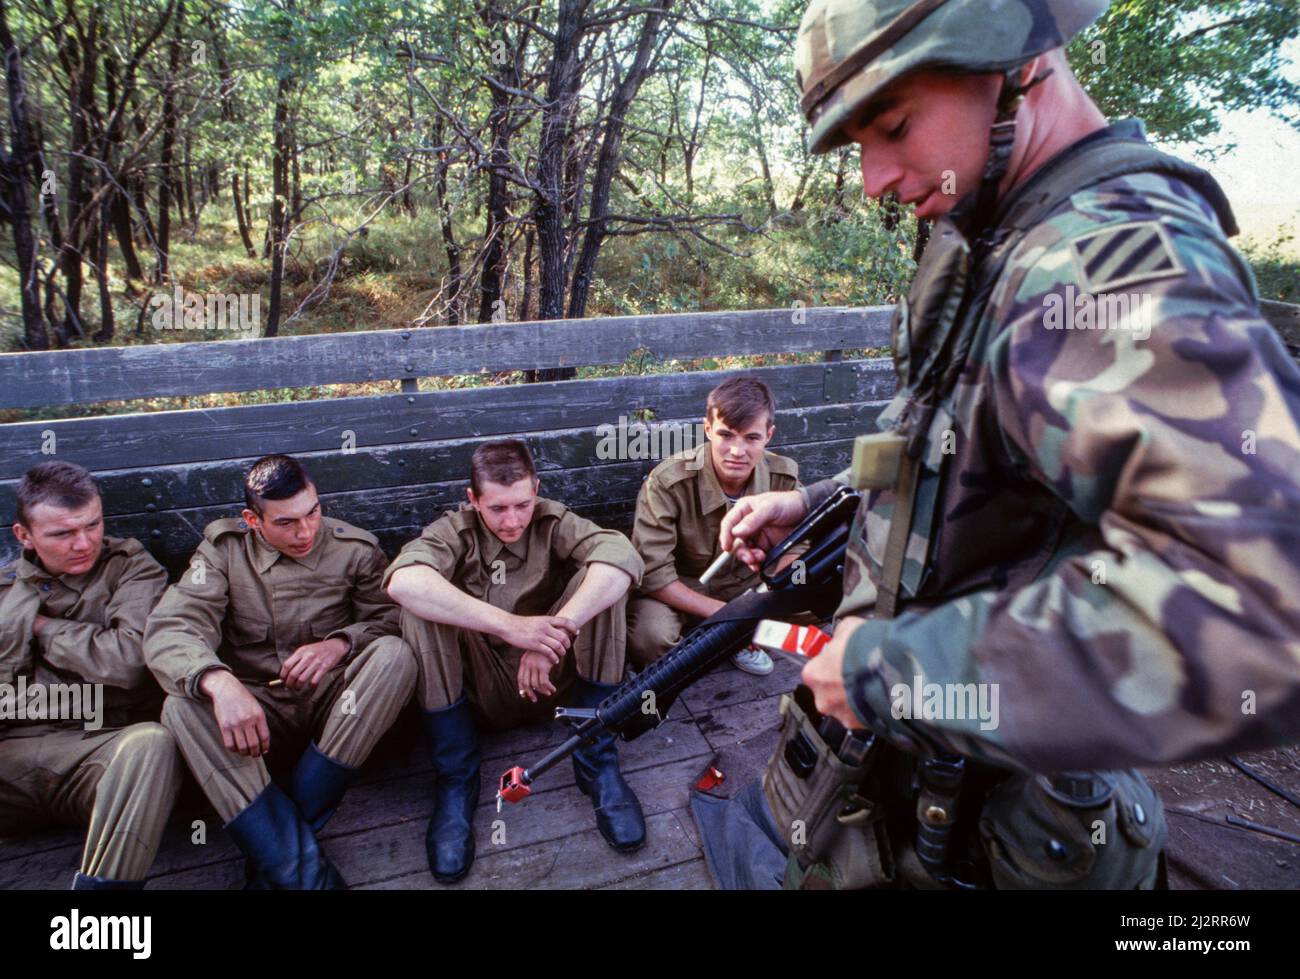 Foto del archivo: Peacekeeper 94, Totskoye, Rusia. Rusia y soldados estadounidenses participaron en los primeros ejercicios militares conjuntos EE.UU.-Rusia en suelo ruso durante el “Peacekeeper 94” en la base militar rusa en Totskoye, 800 millas (1.280km) al sureste de Moscú. Septiembre 1994. Foto de stock